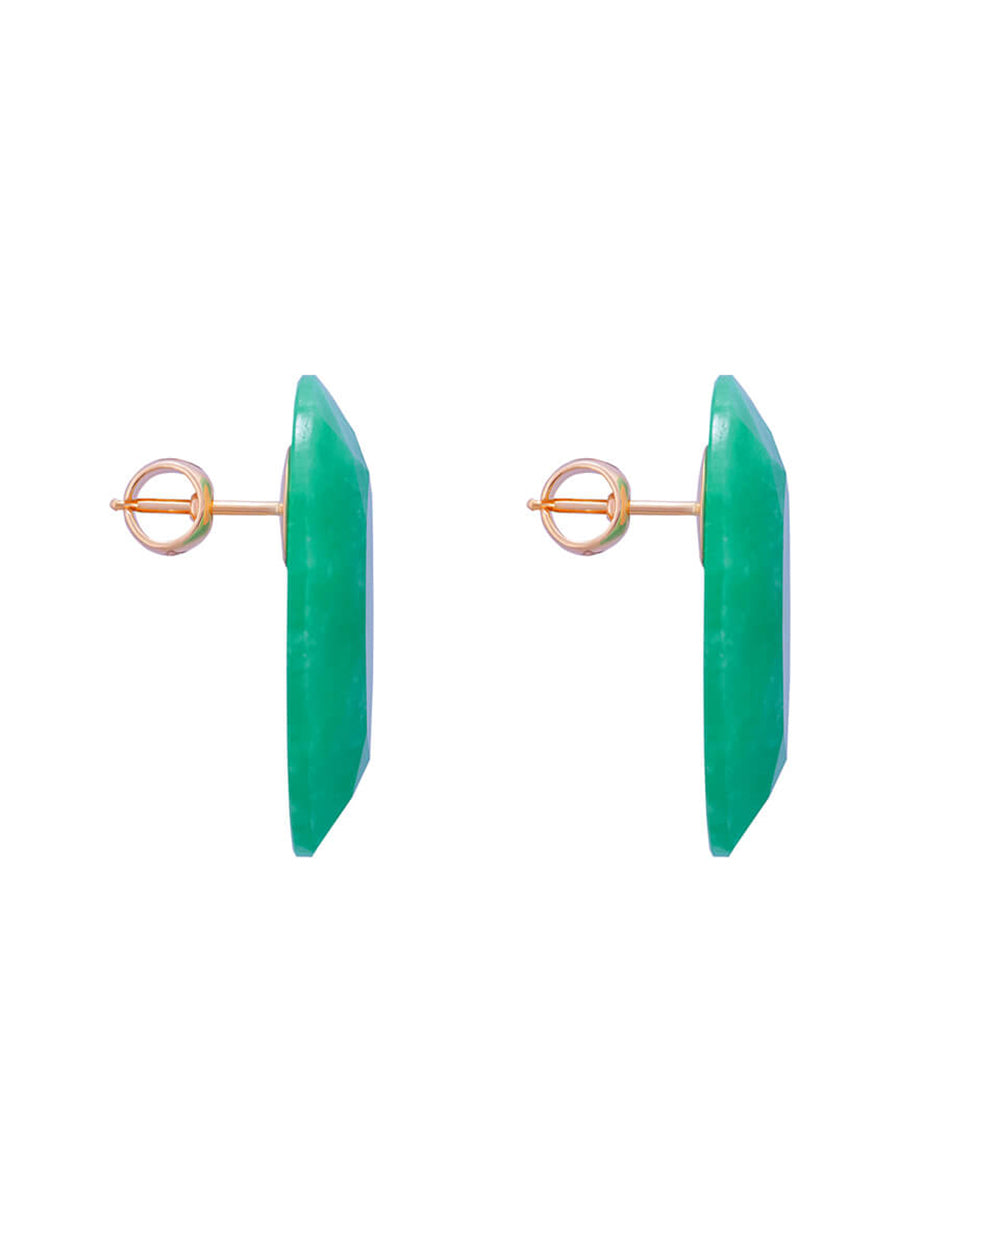 Chrysopras earrings